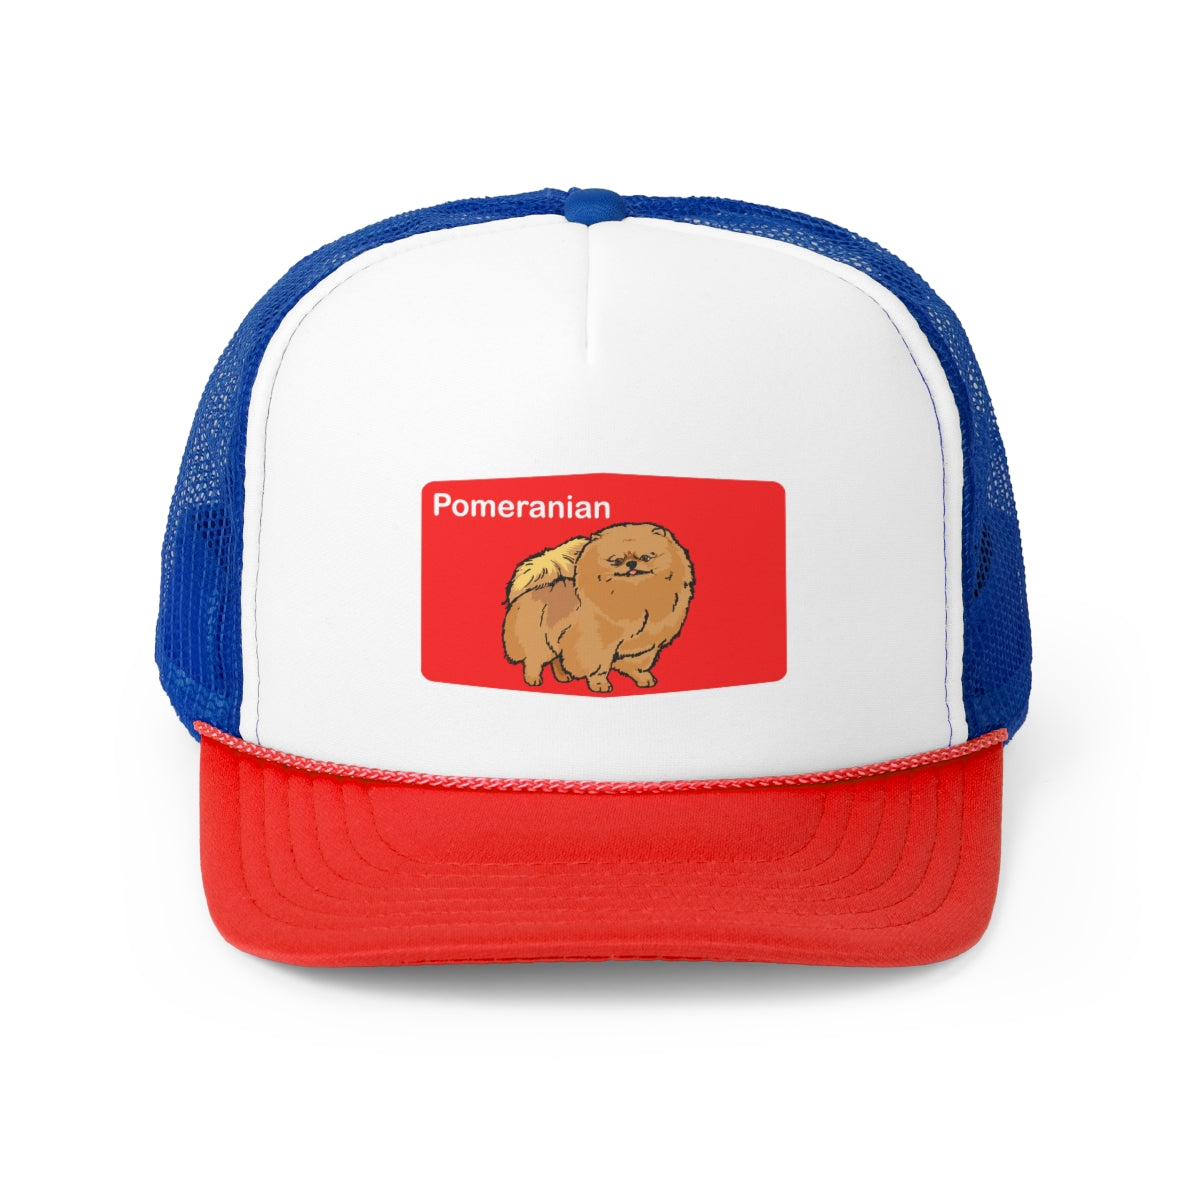 Pomeranian Trucker Hat